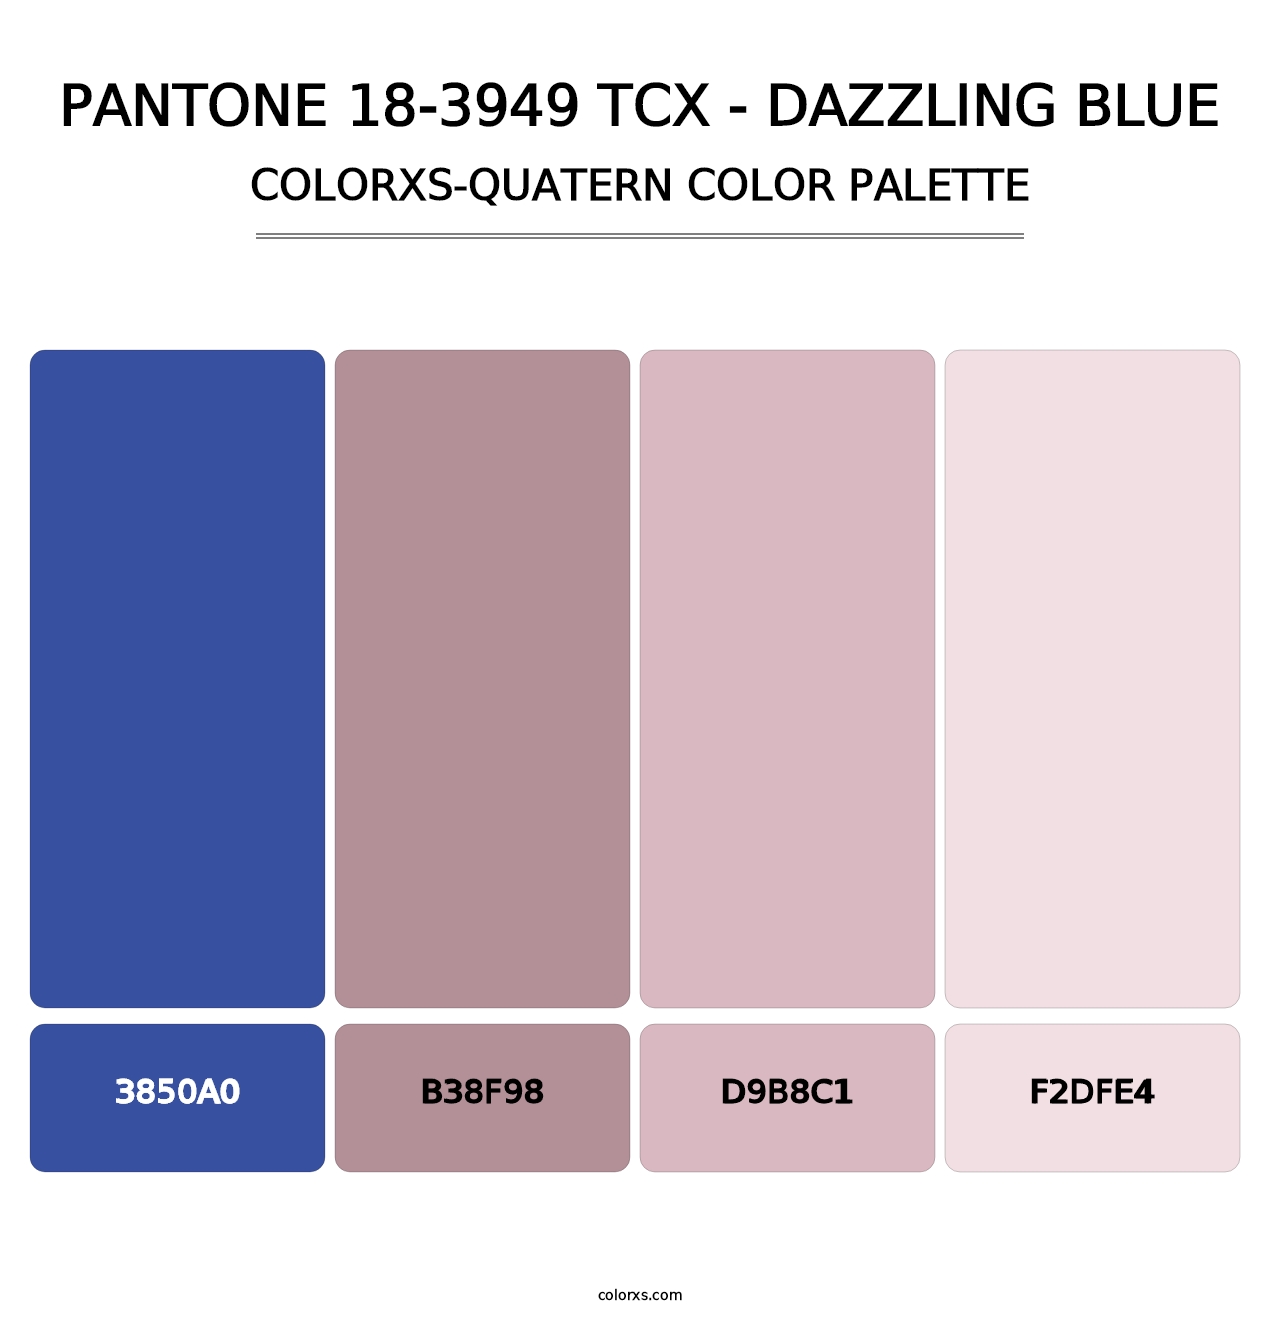 PANTONE 18-3949 TCX - Dazzling Blue - Colorxs Quatern Palette